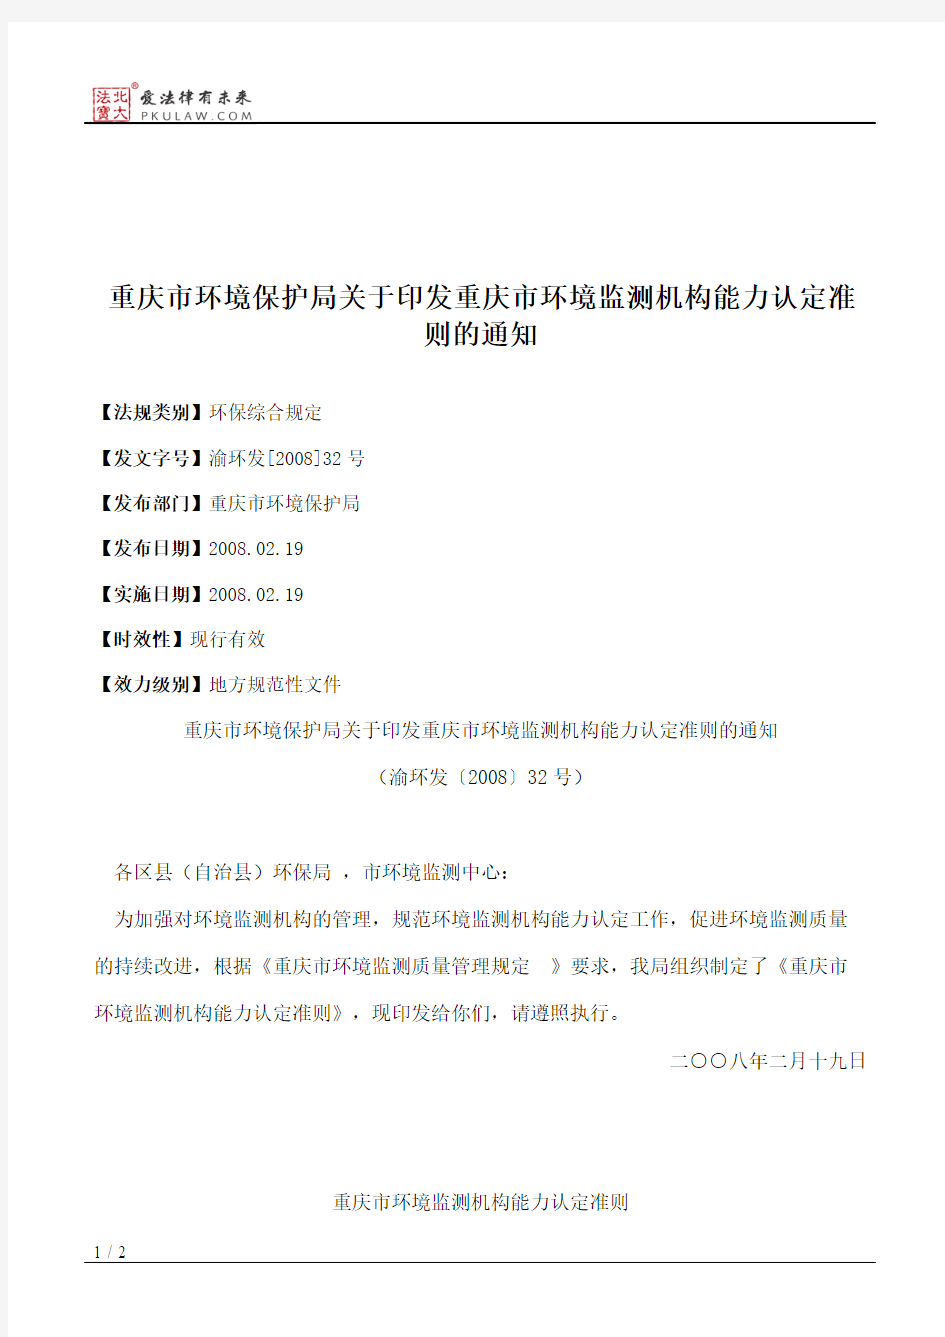 重庆市环境保护局关于印发重庆市环境监测机构能力认定准则的通知